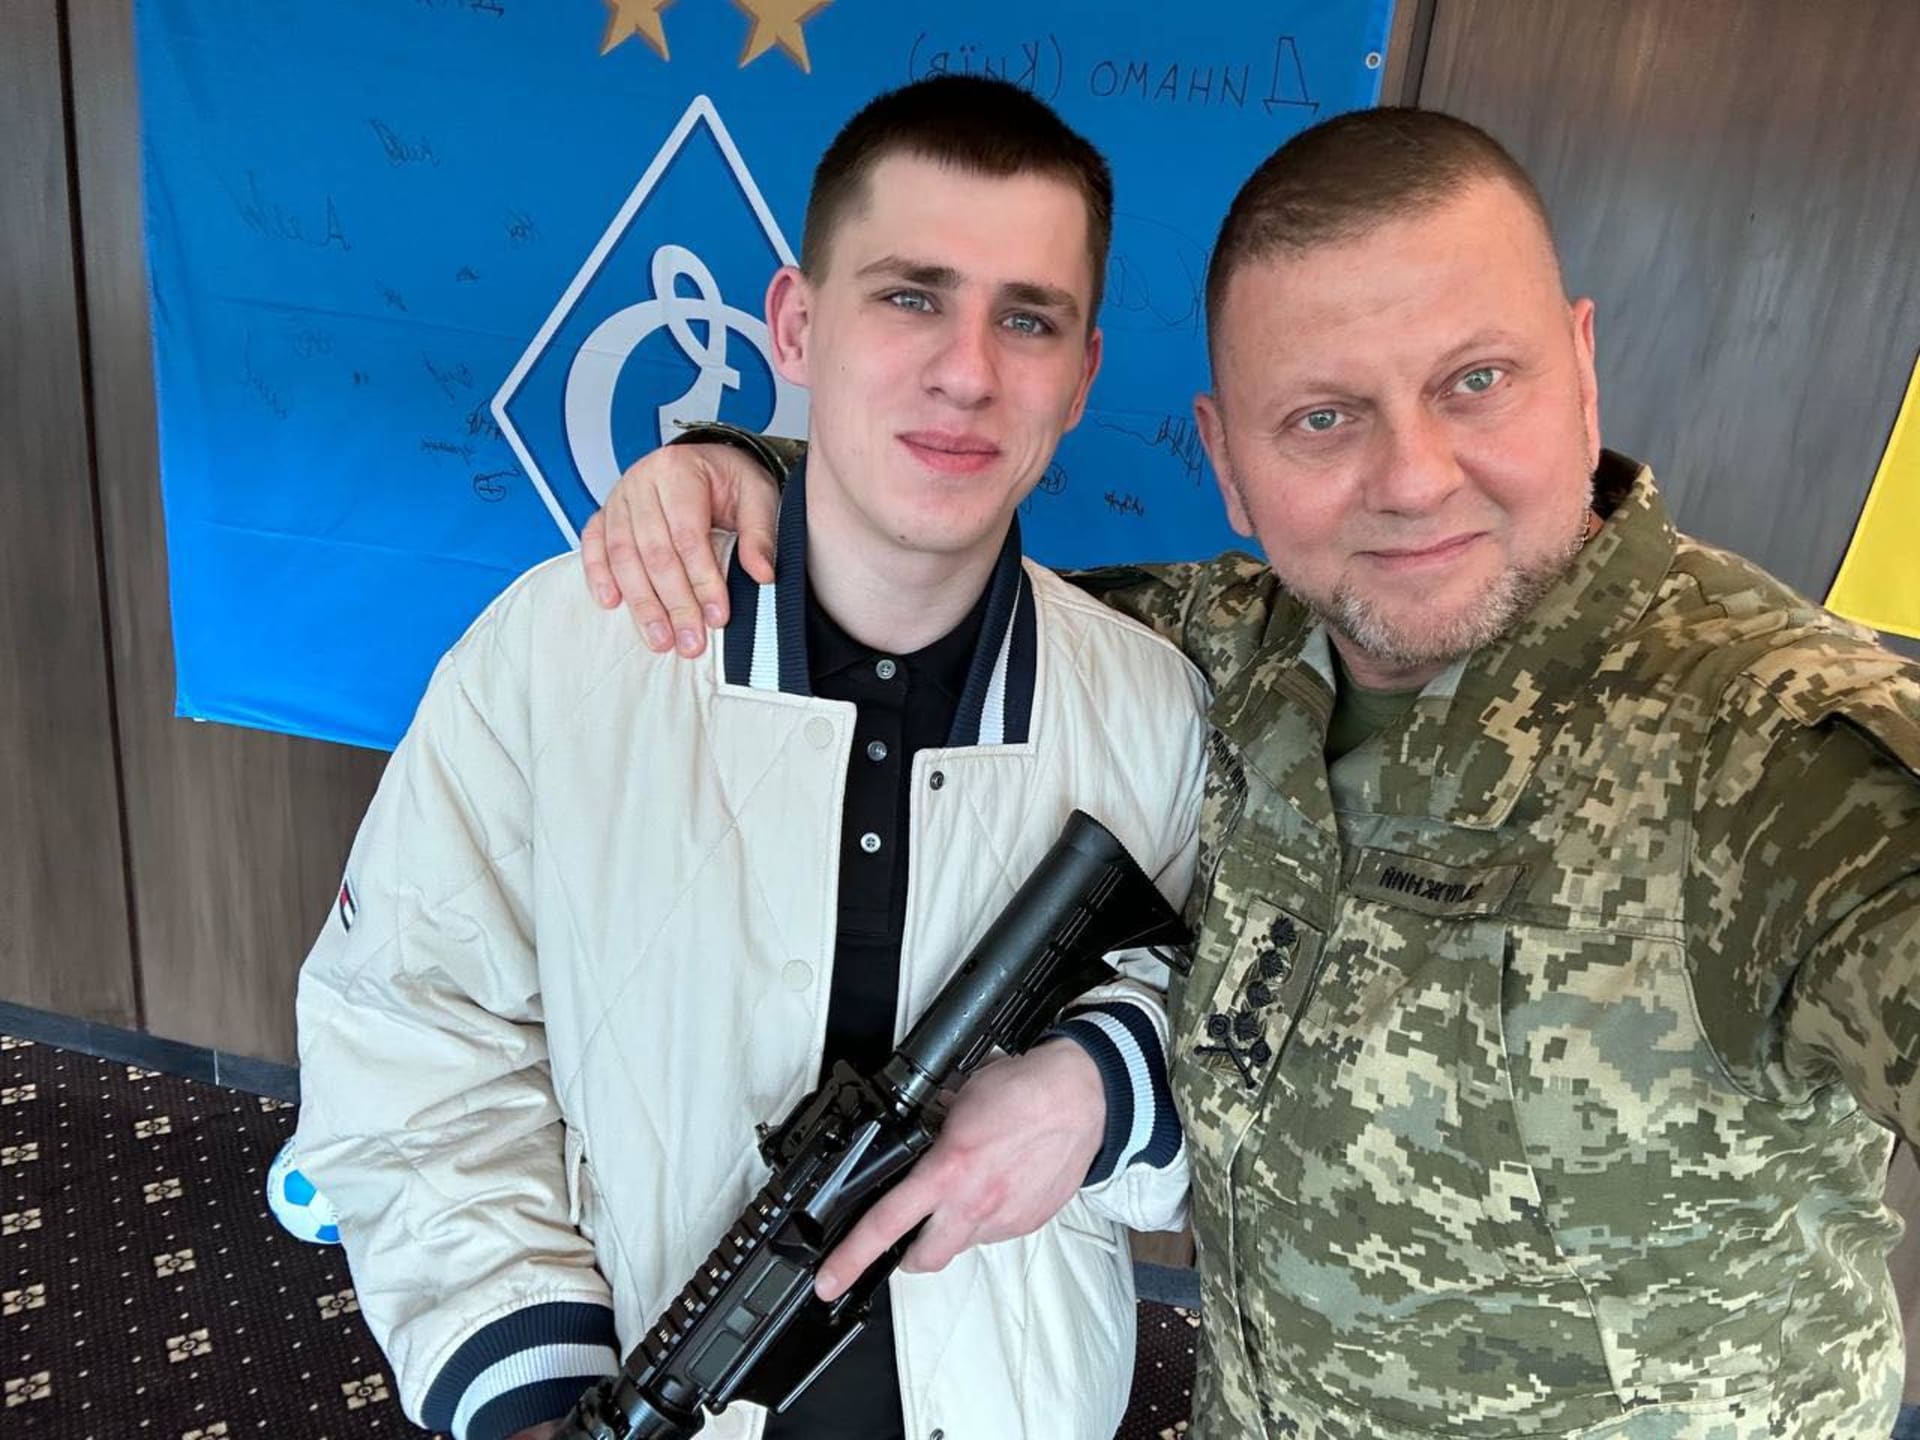 Ukrajinský voják Ruslan Zubarev, který pořídil video z pohledu první osoby ukazující autentické záběry z těch nejdrsnějších zákopových bojů, obdržel vyznamenání Zlatý kříž.